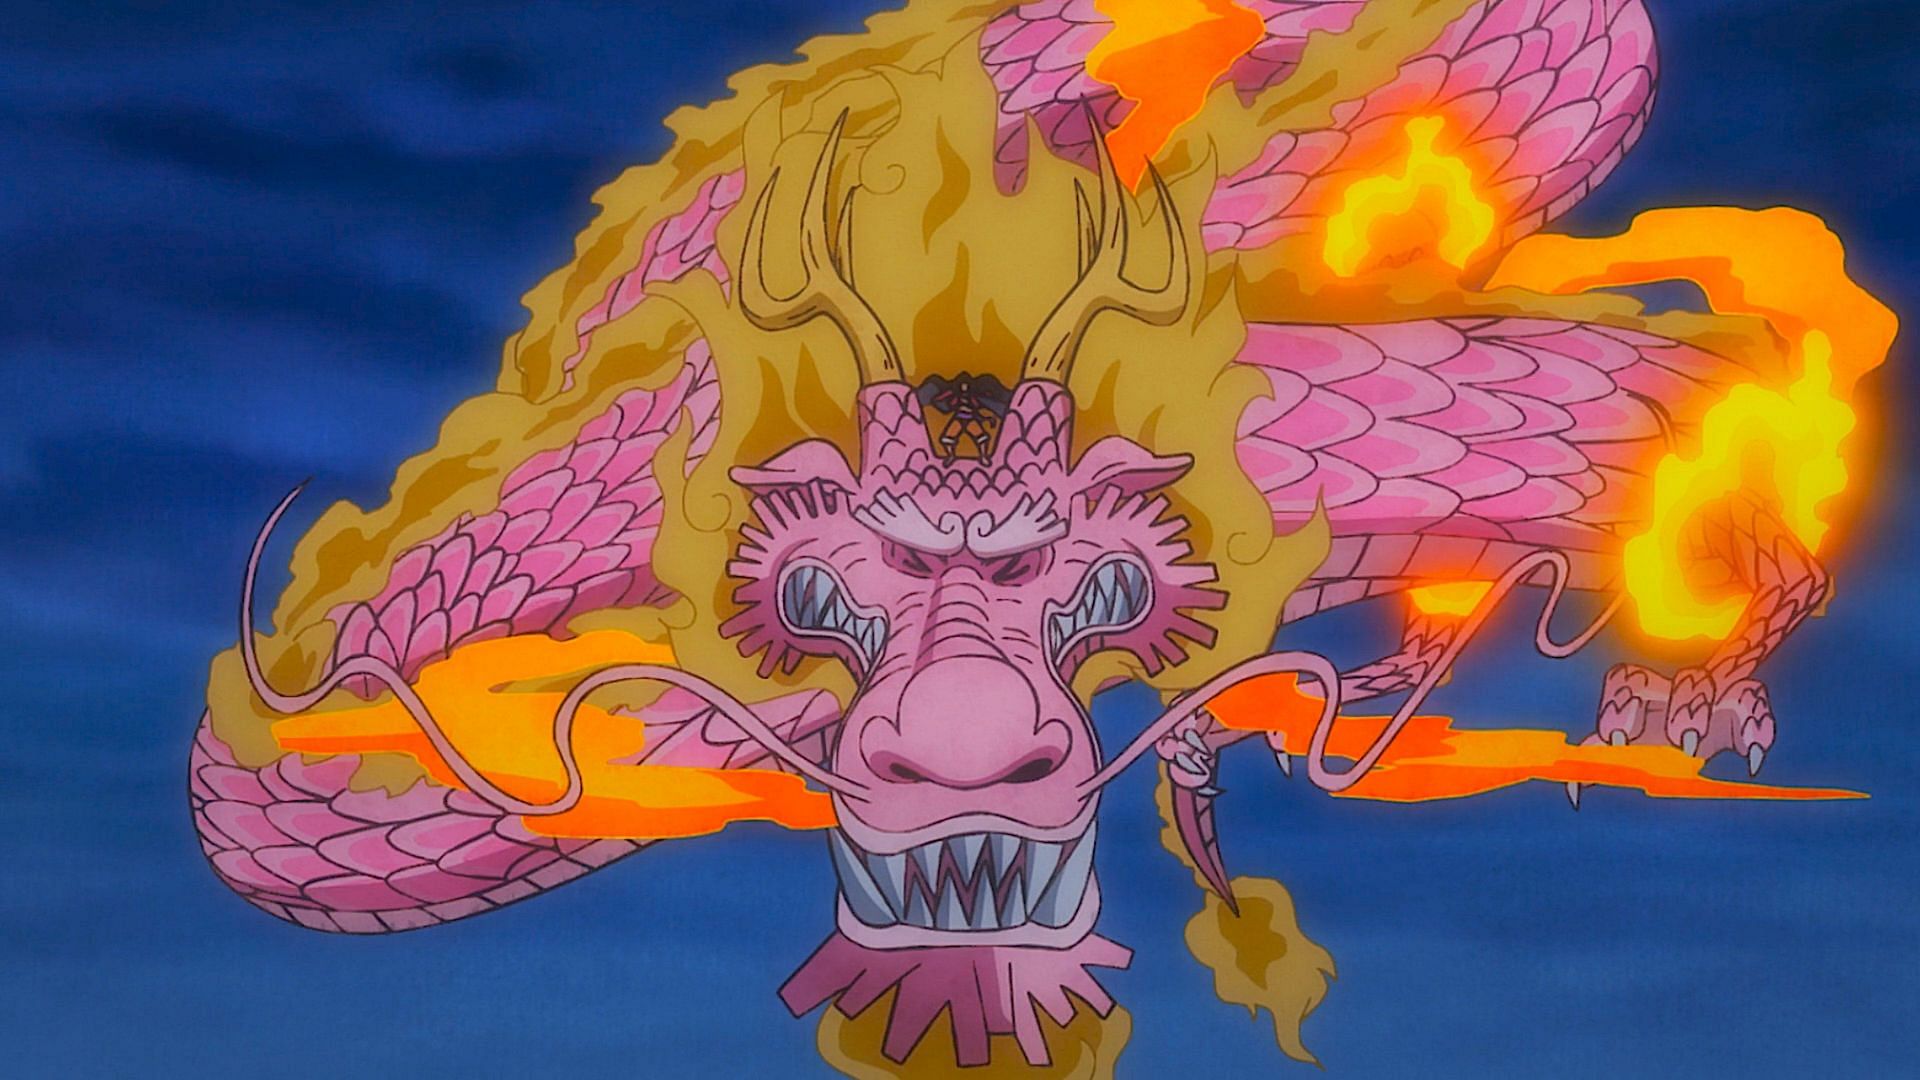 Momonosuke flying in One Piece episode 1049 (Image via Toei Animation)